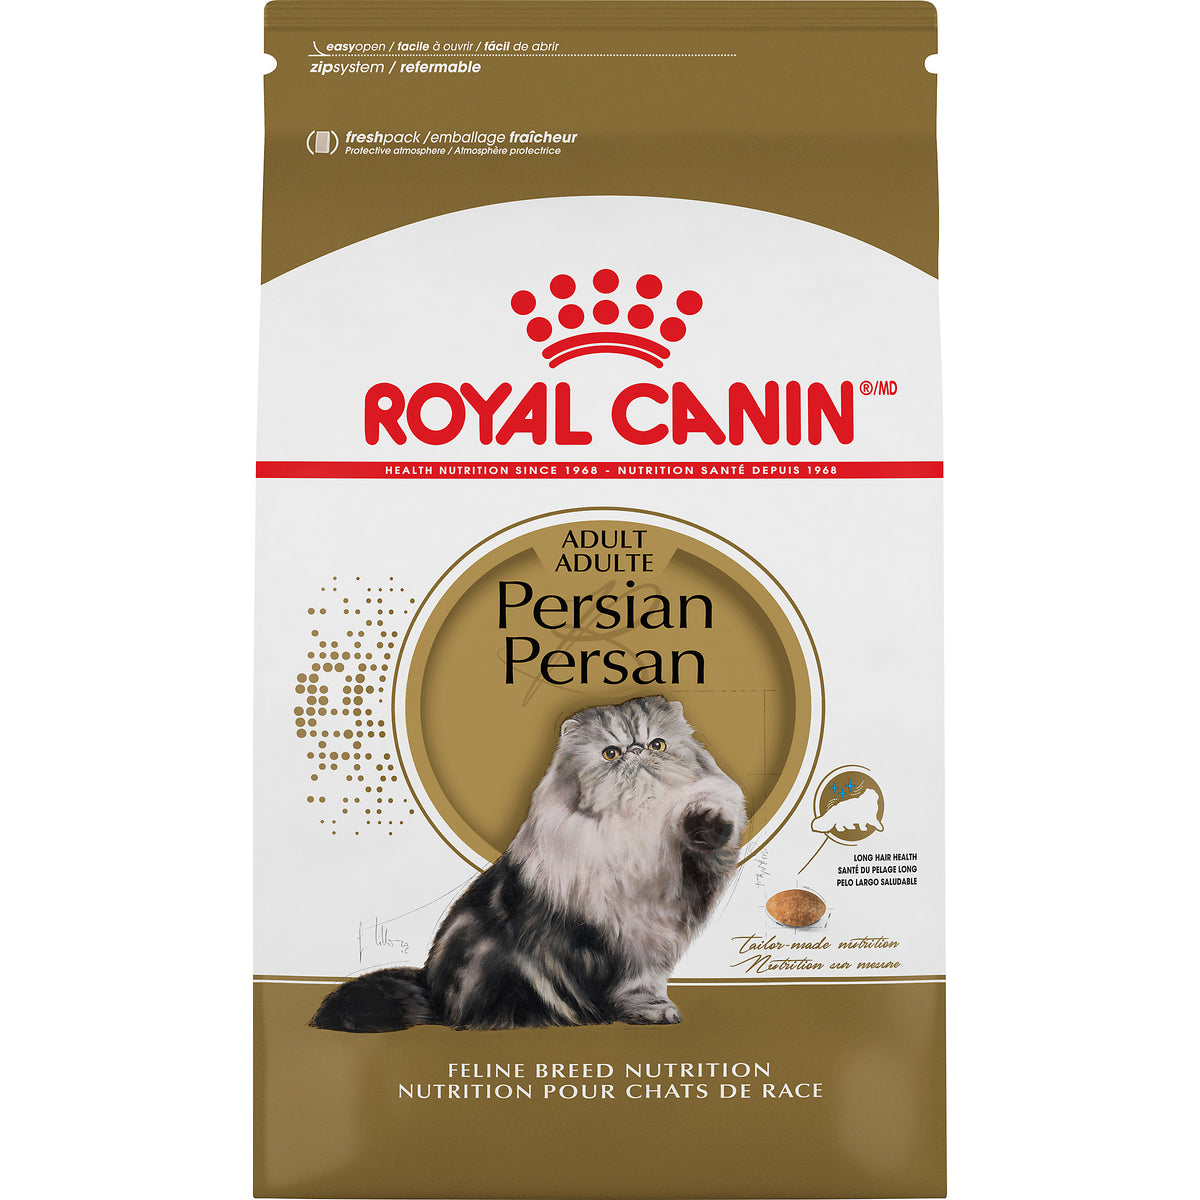 Royal Canin Persian Cat Food